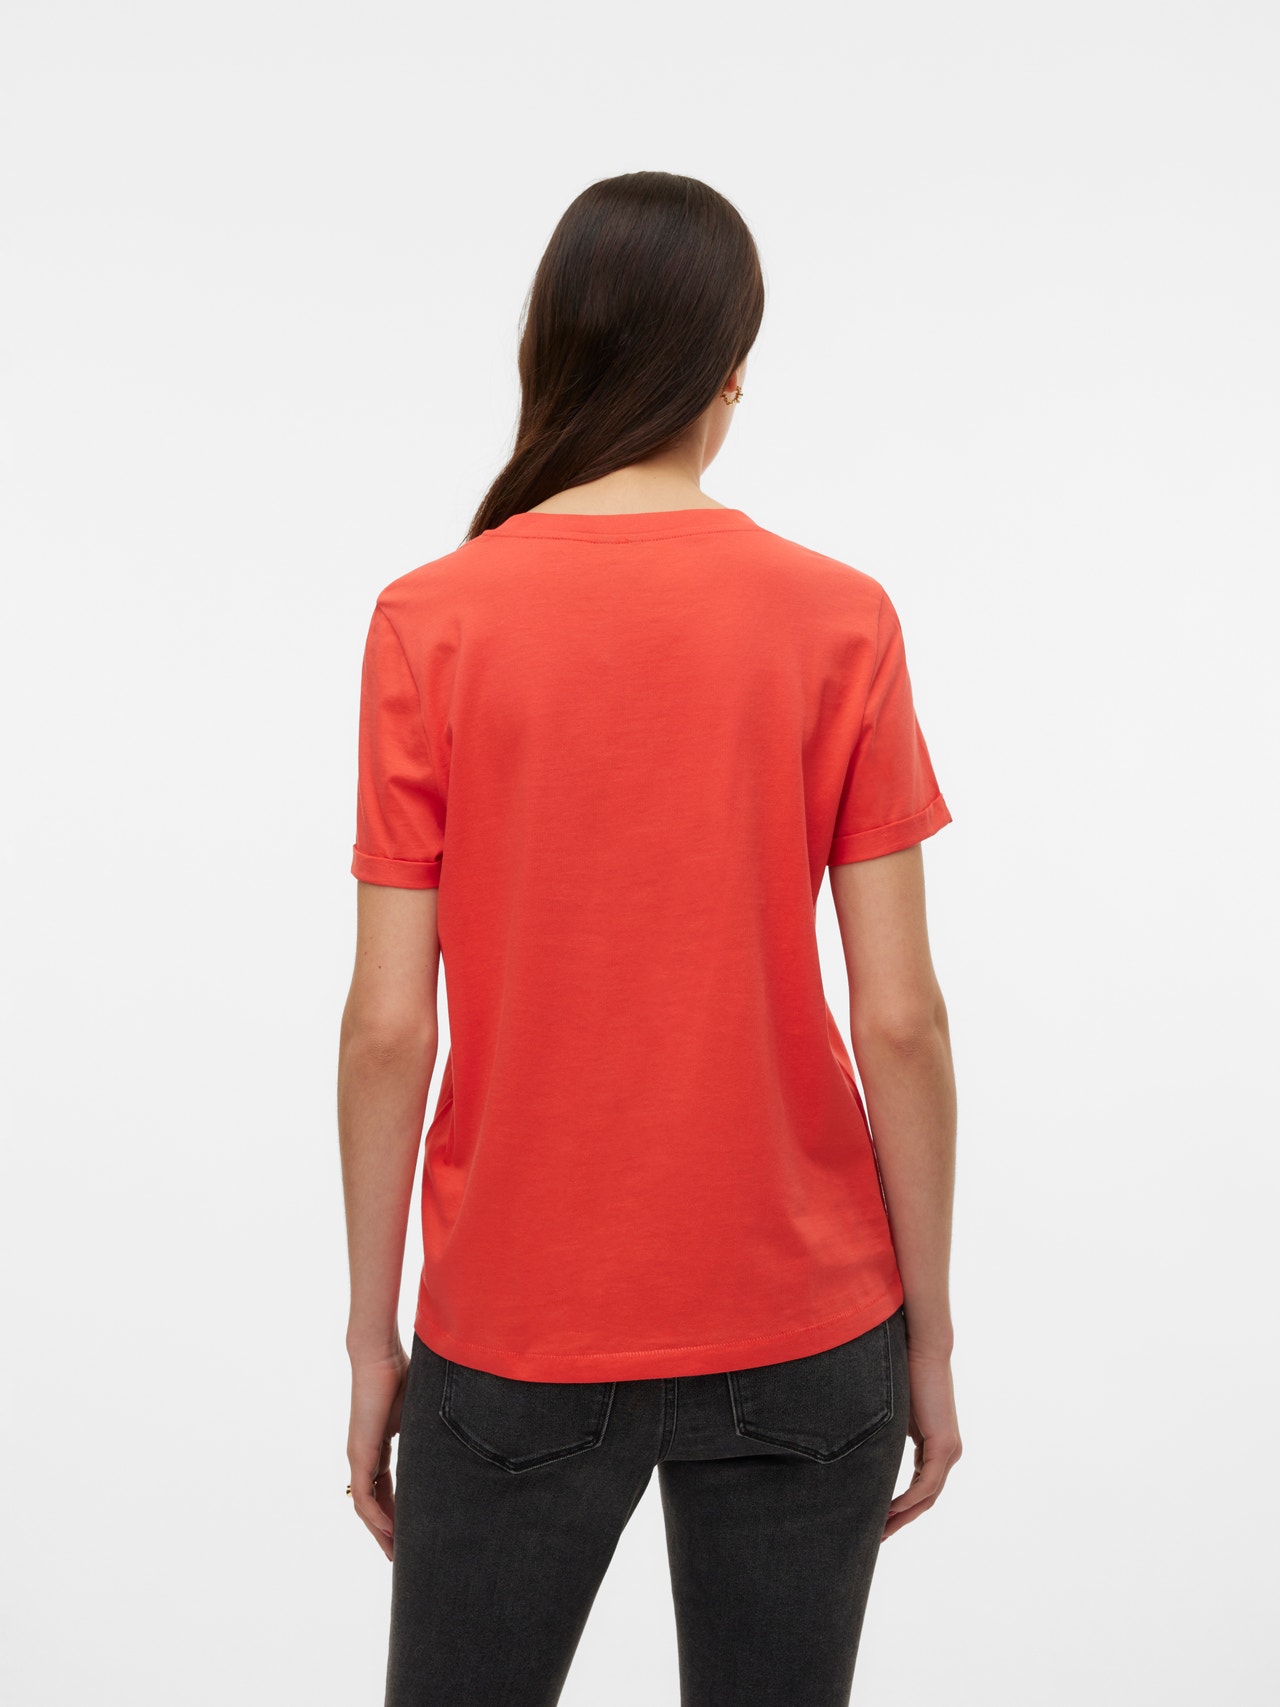 Vero Moda VMPAULA T-Shirt -Cayenne - 10243889